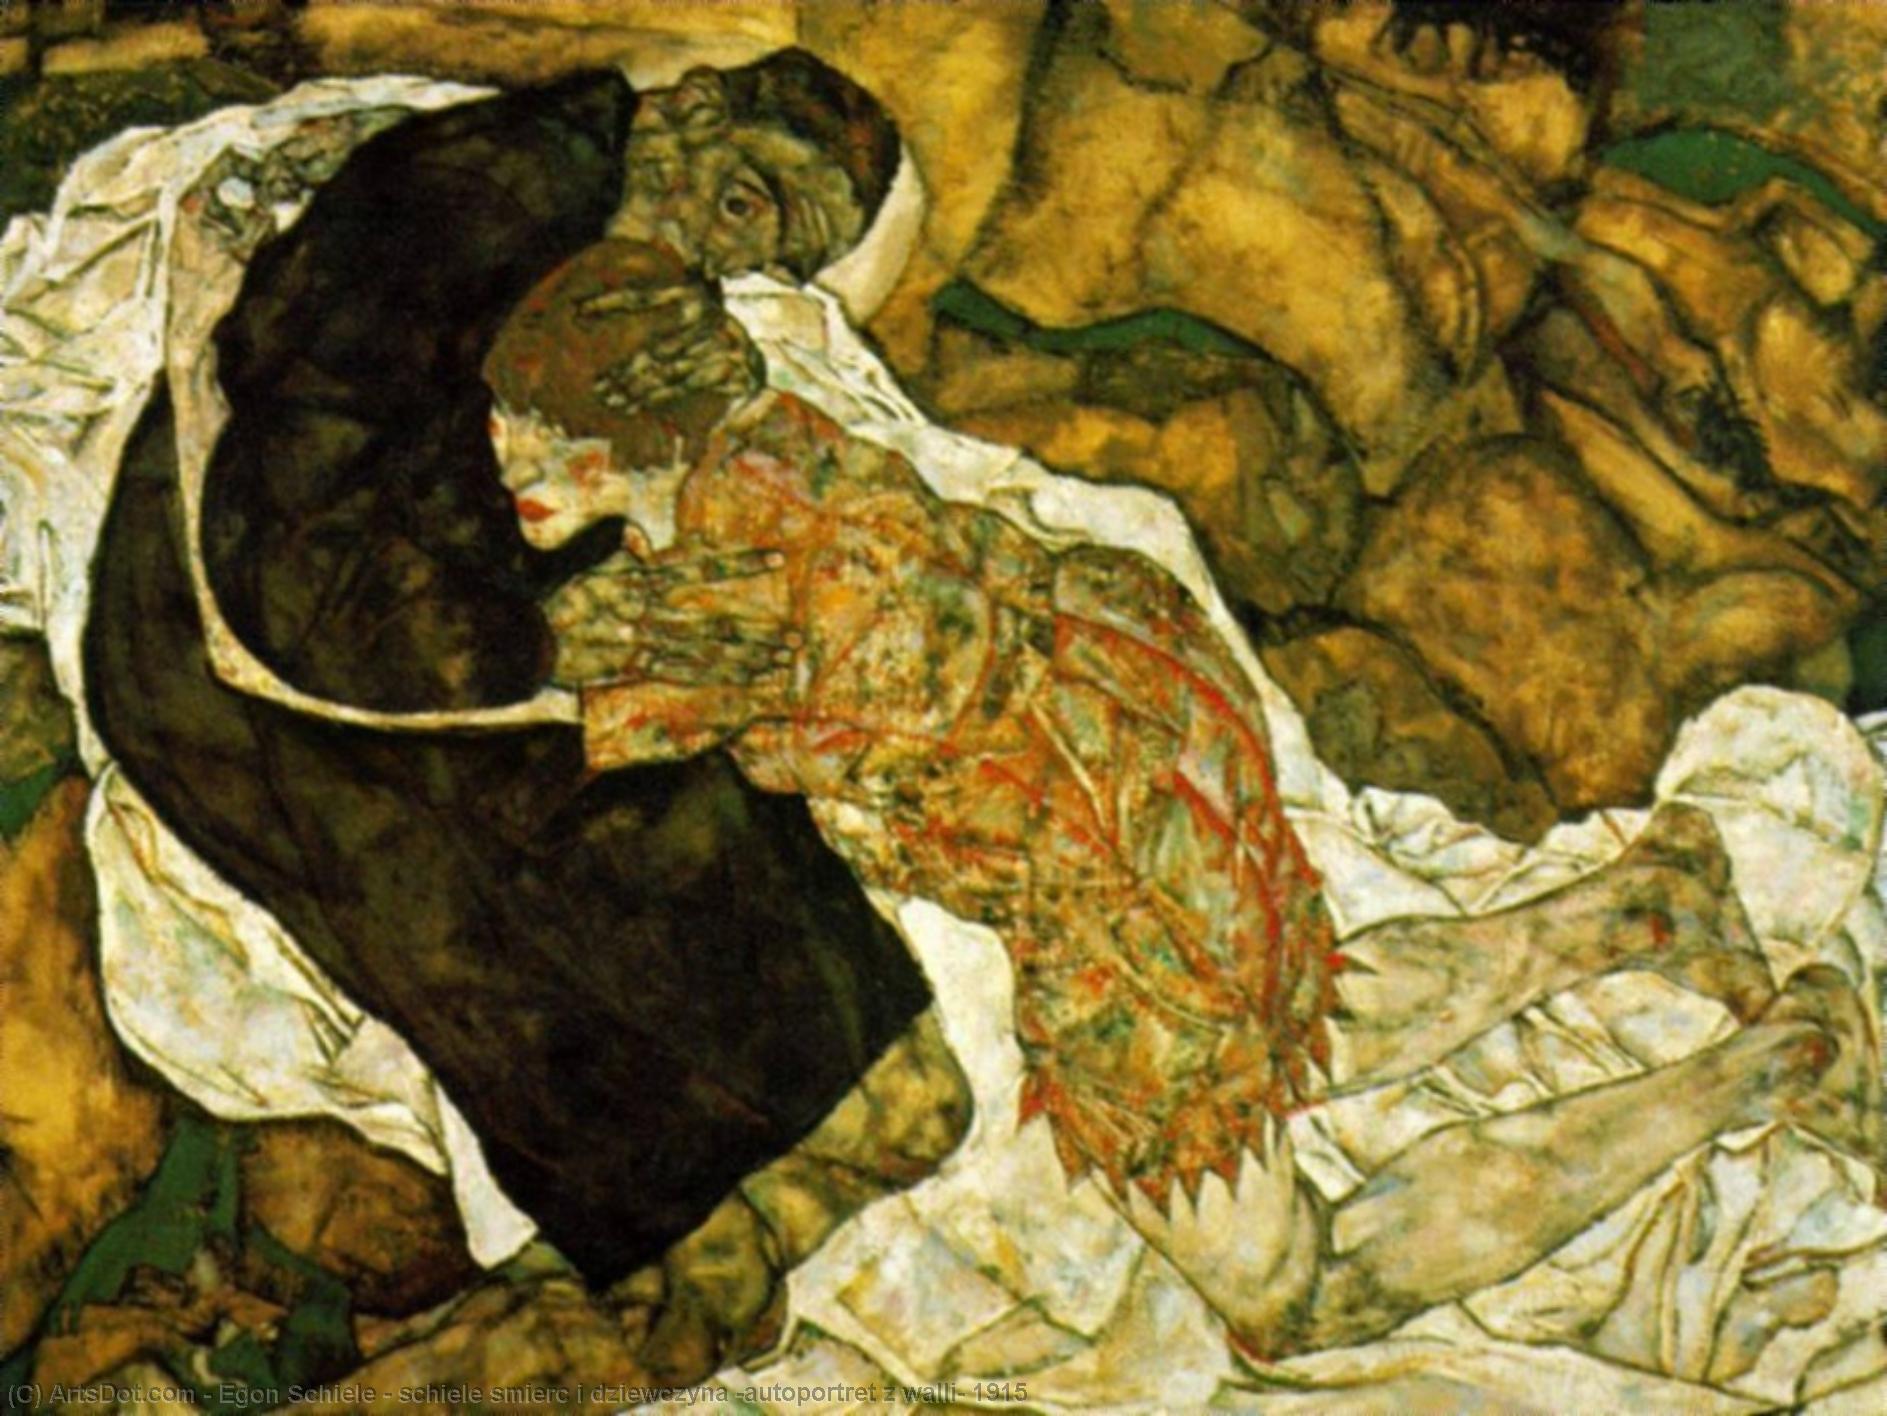 WikiOO.org - Encyclopedia of Fine Arts - Maľba, Artwork Egon Schiele - schiele smierc i dziewczyna (autoportret z walli) 1915